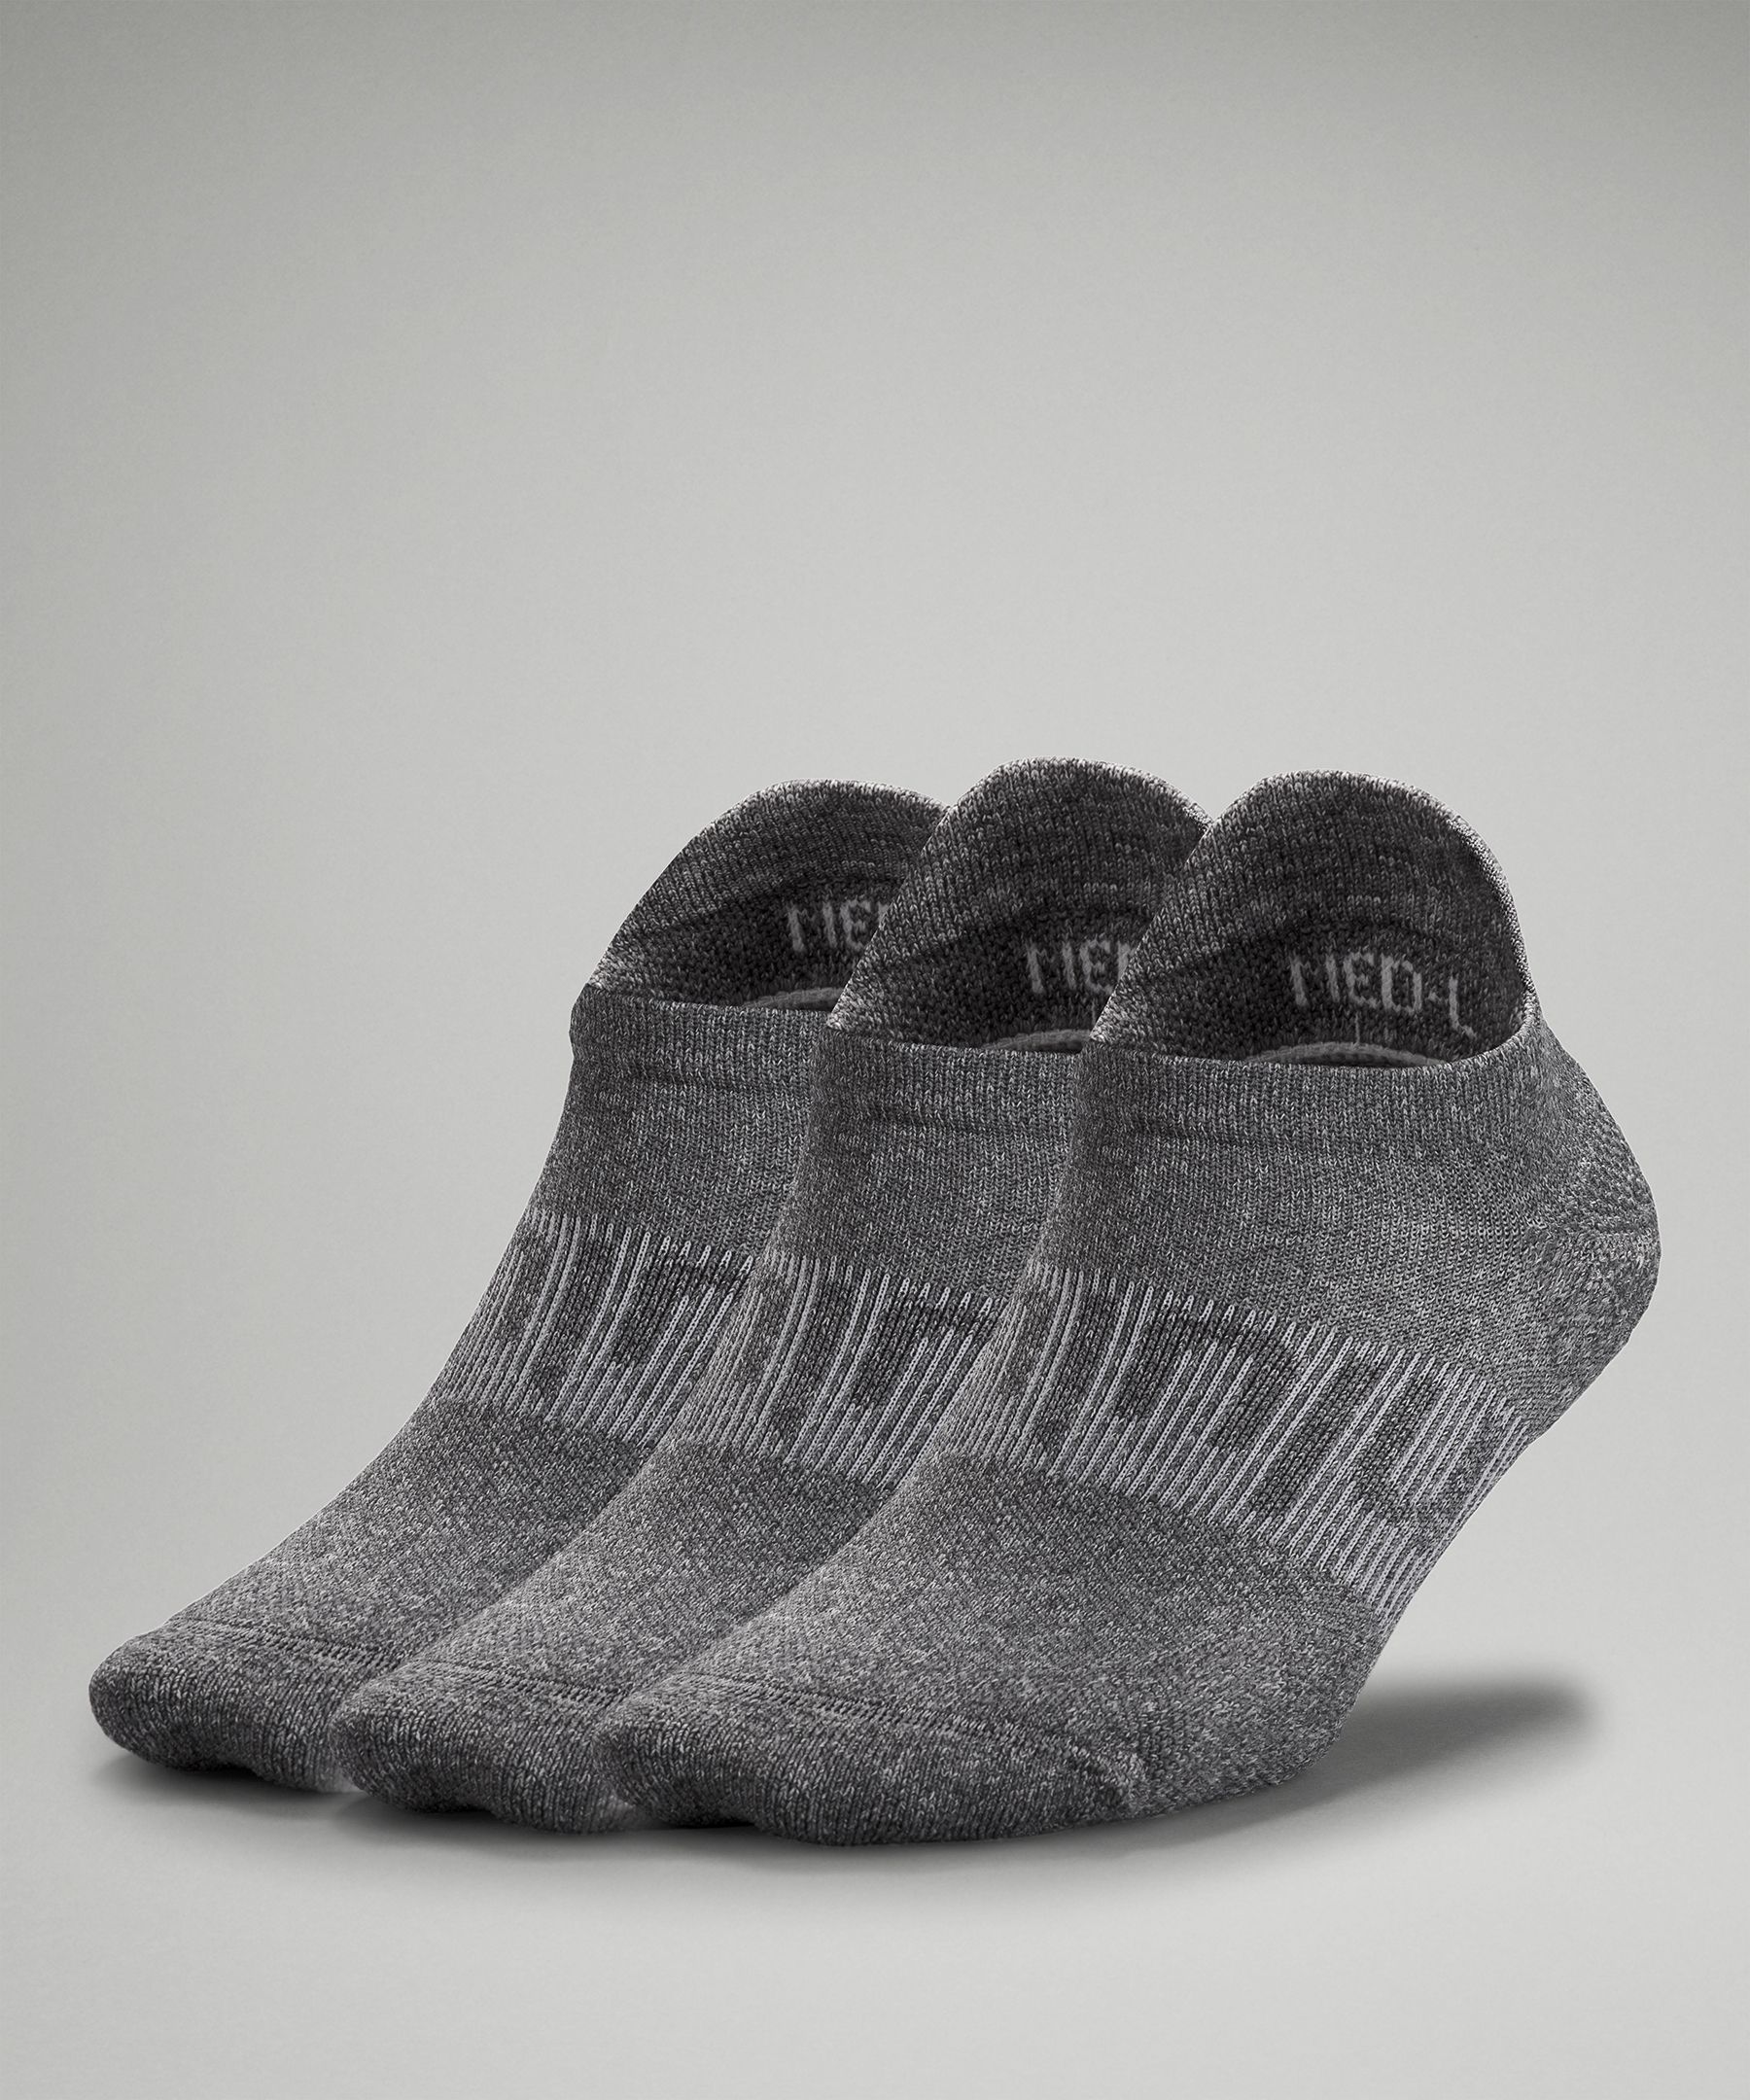 Lululemon Power Stride Tab Socks 3 Pack In Heather Grey/heather Grey/heather Grey